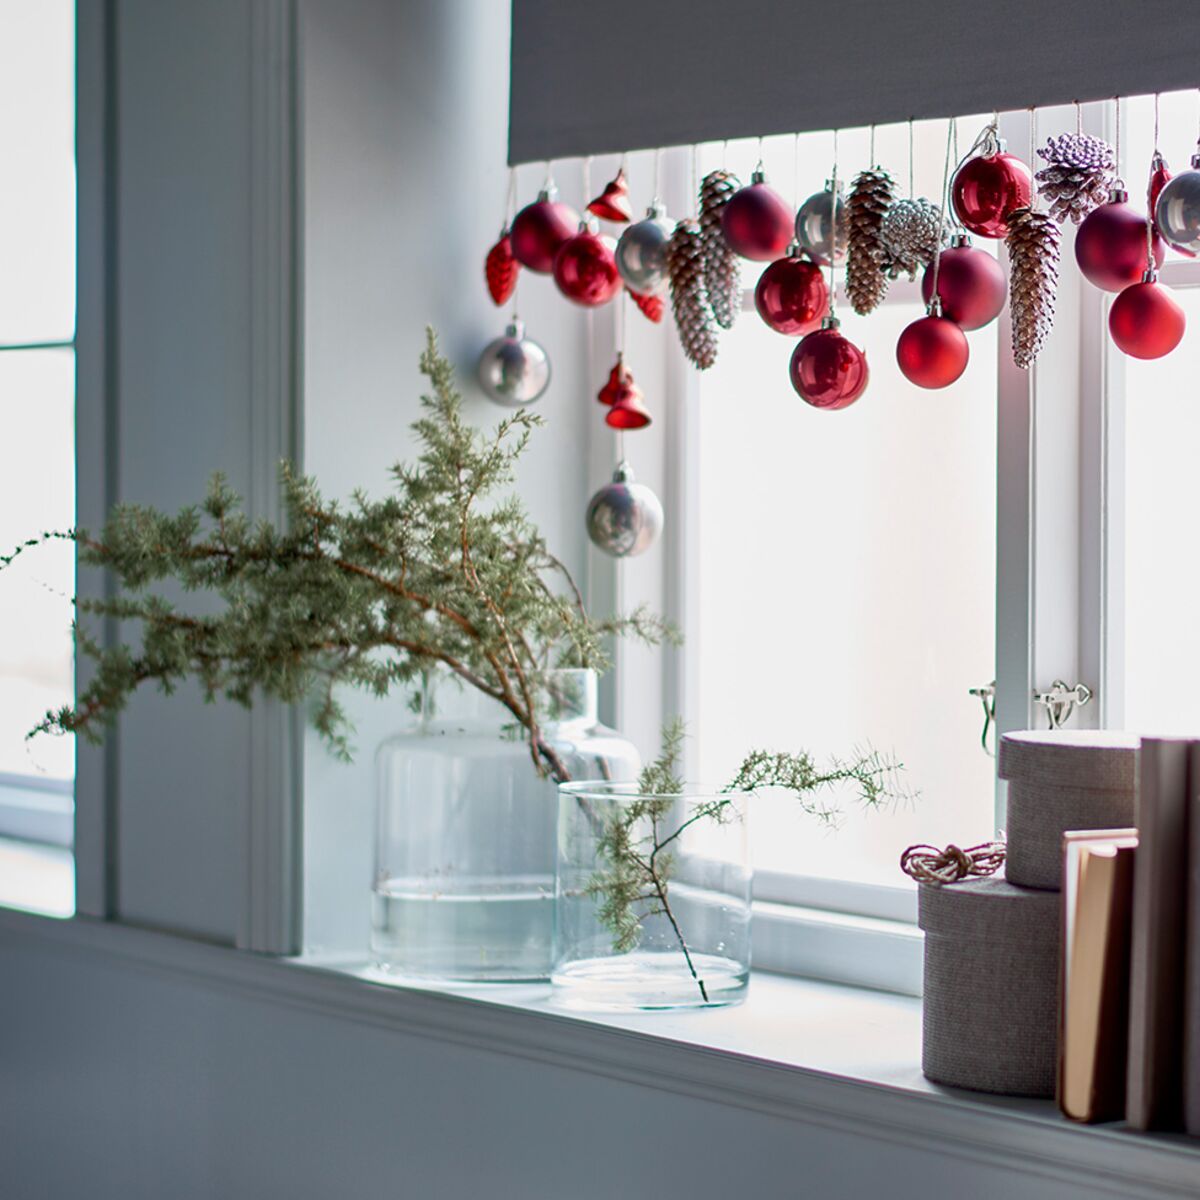 Des idées pour décorer les fenêtres à Noël